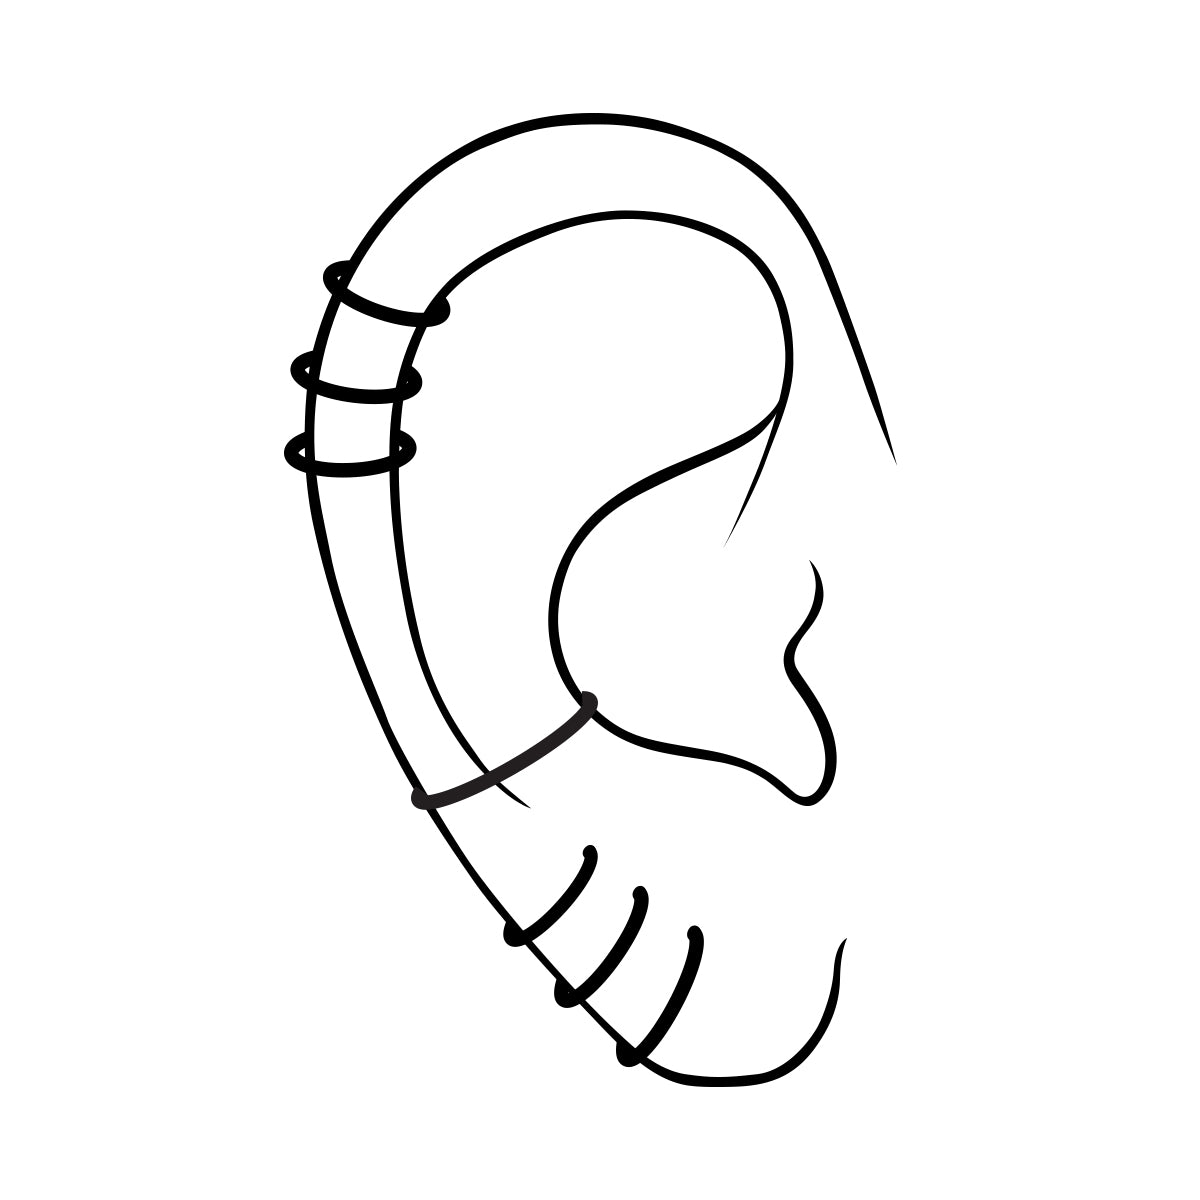 Steel hoop earring with dagger cross